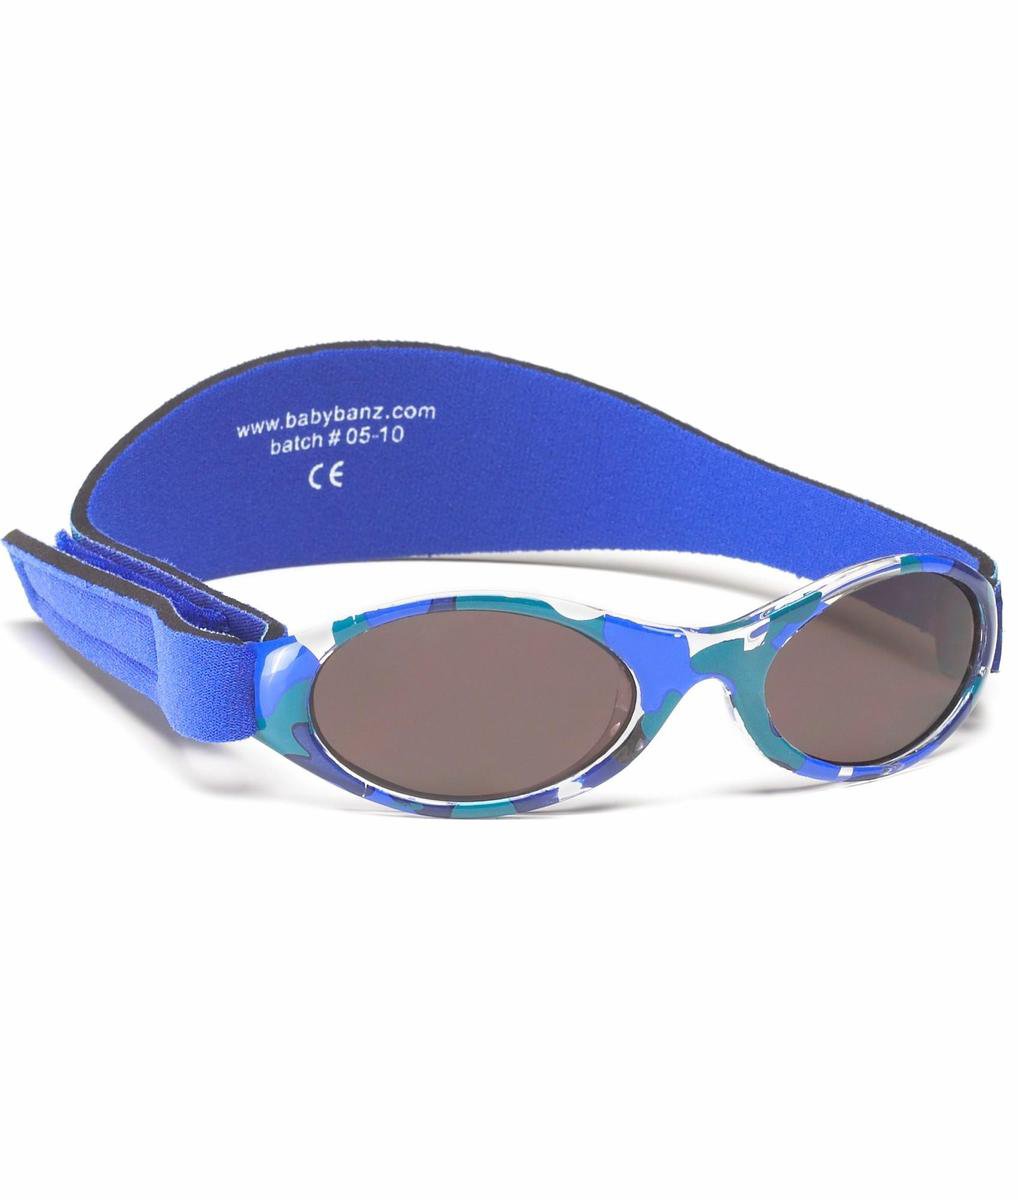 Banz - UV-beschermende zonnebril voor kinderen - Bubzee - Blauw Camo - maat Onesize (0-2yrs)